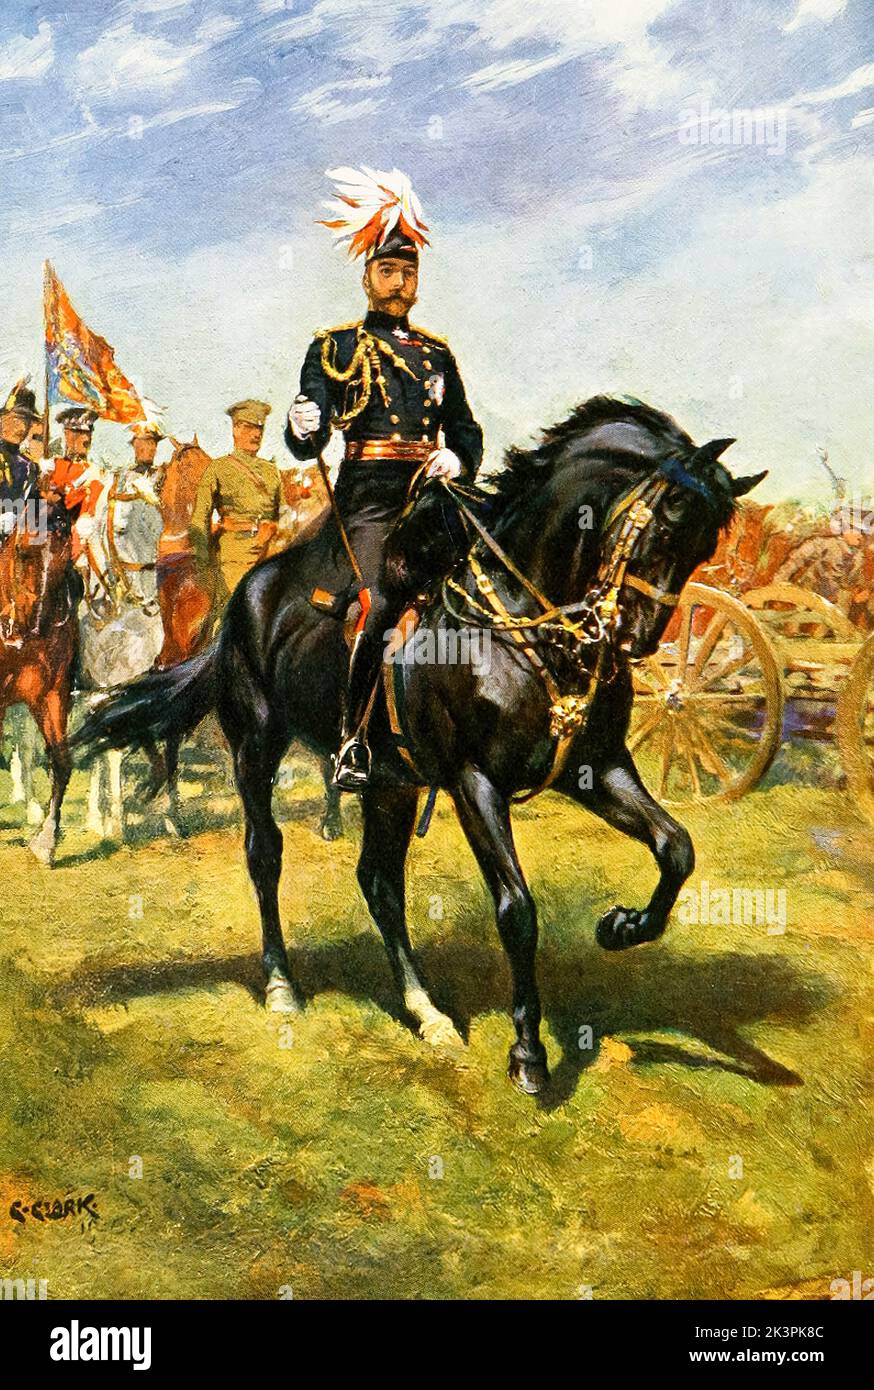 Roi George V du Royaume-Uni (1865-1936), règne (1910-1936), à cheval, illustration de portrait équestre par Christopher Clark, 1911 Banque D'Images